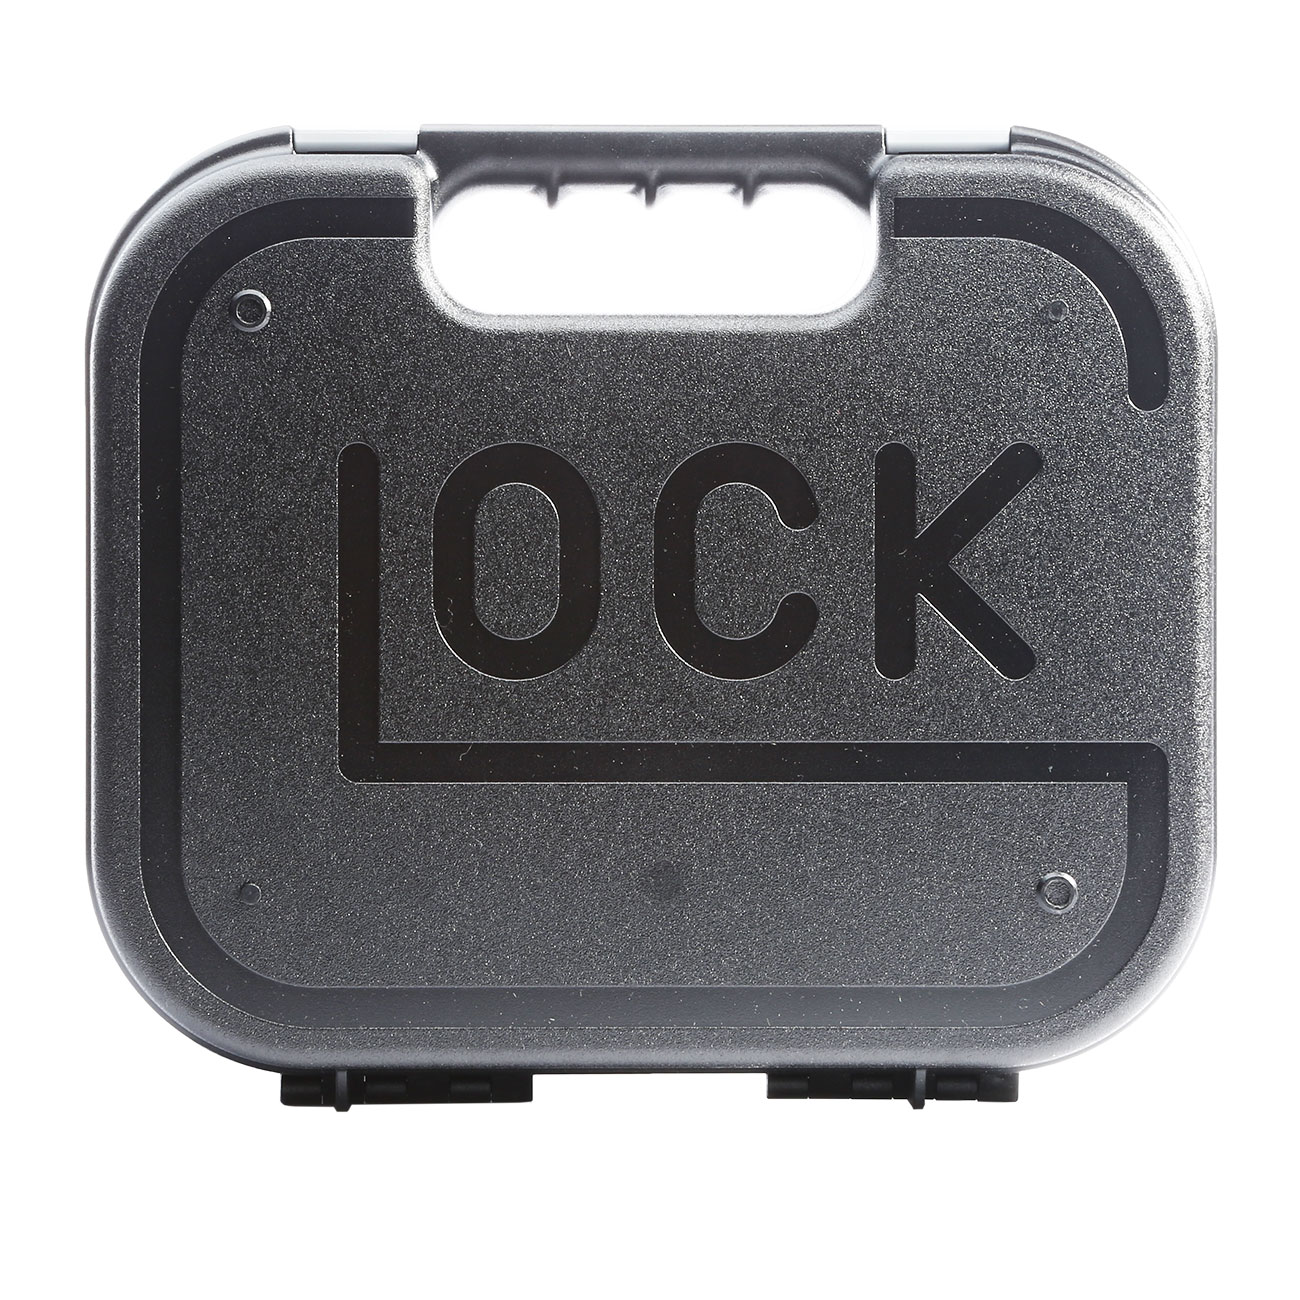 Glock 17 Gen. 3 CO2-Pistole Kal. 4,5 mm Diabolo/Stahl-BB inkl. Glock Pistolenkoffer Bild 1